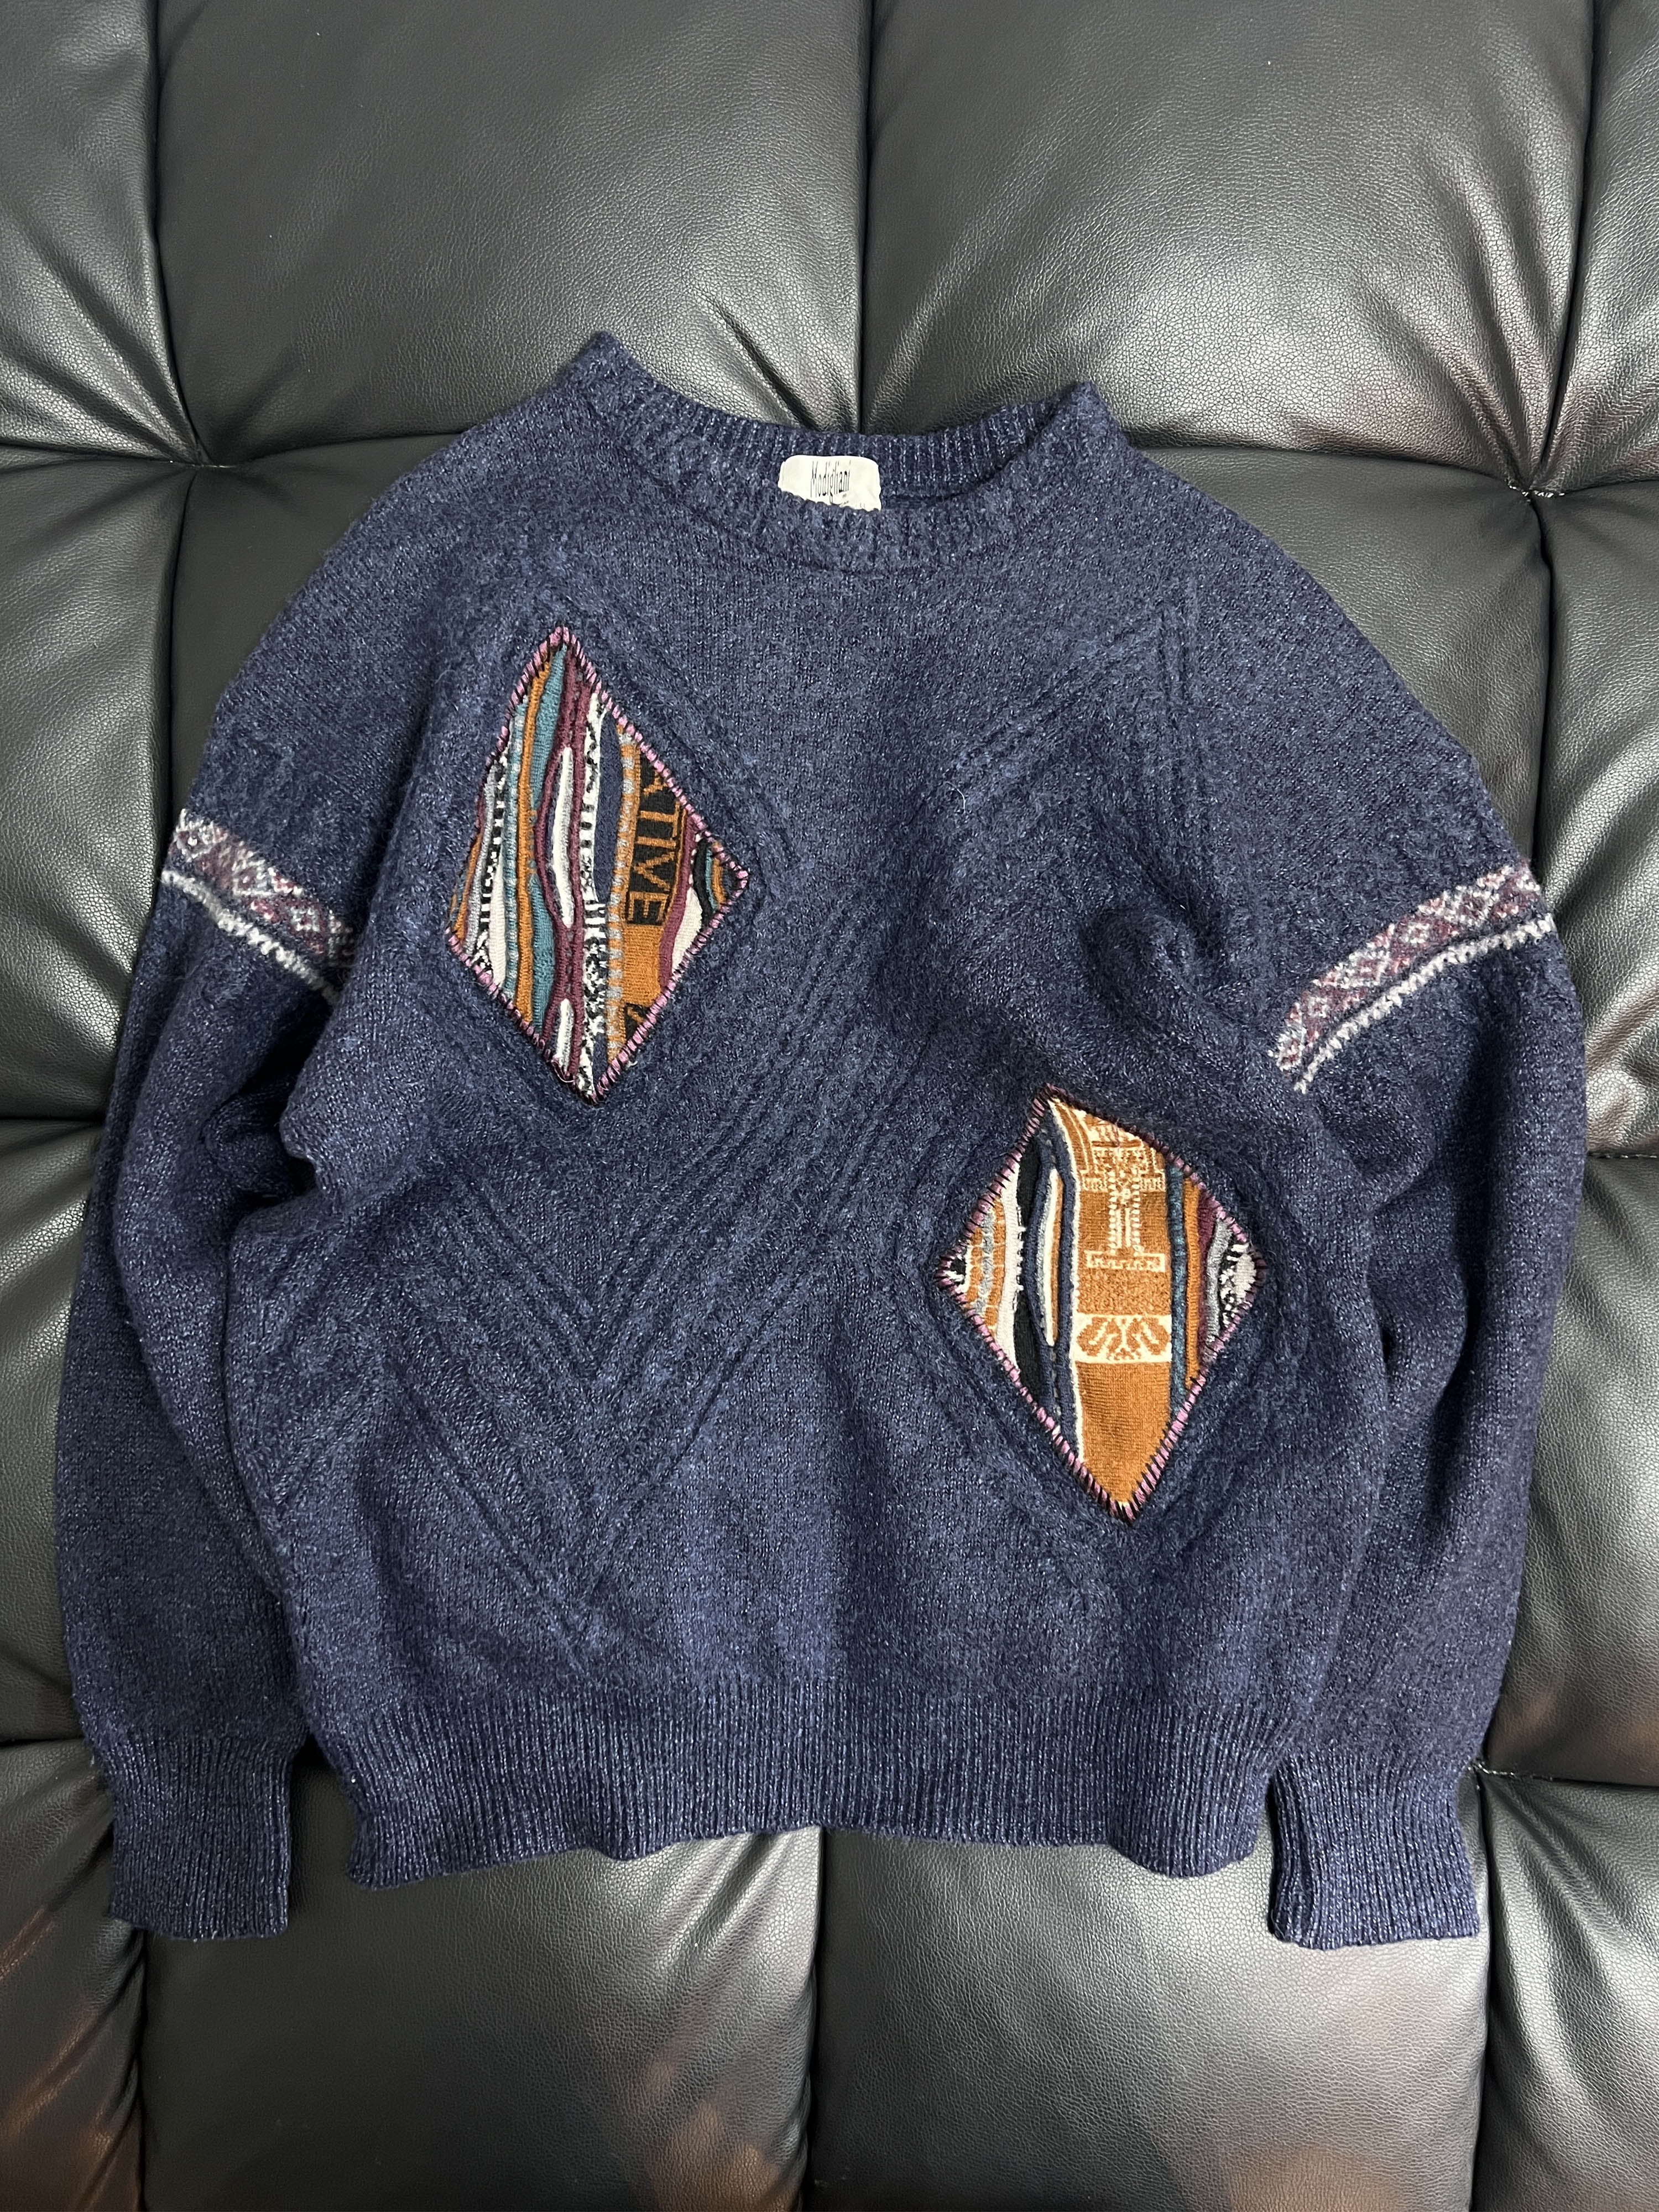 Modigliani mixed pattern knit